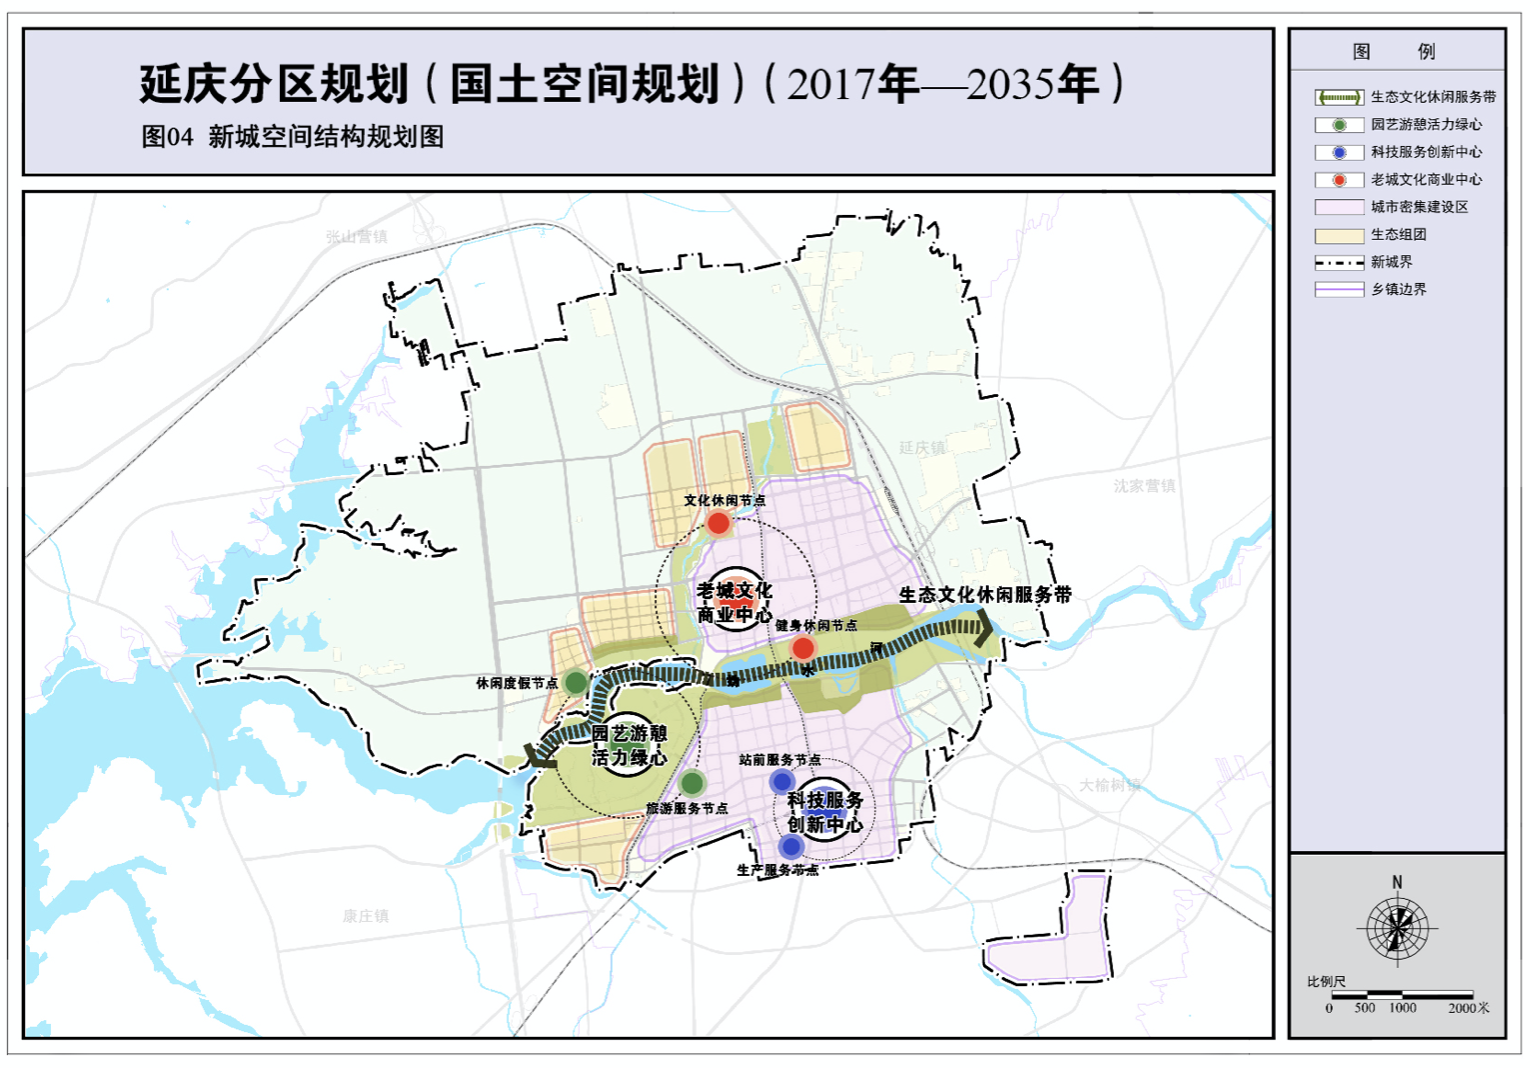 北京延庆将规划八达岭,大庄科等14个"小城镇"